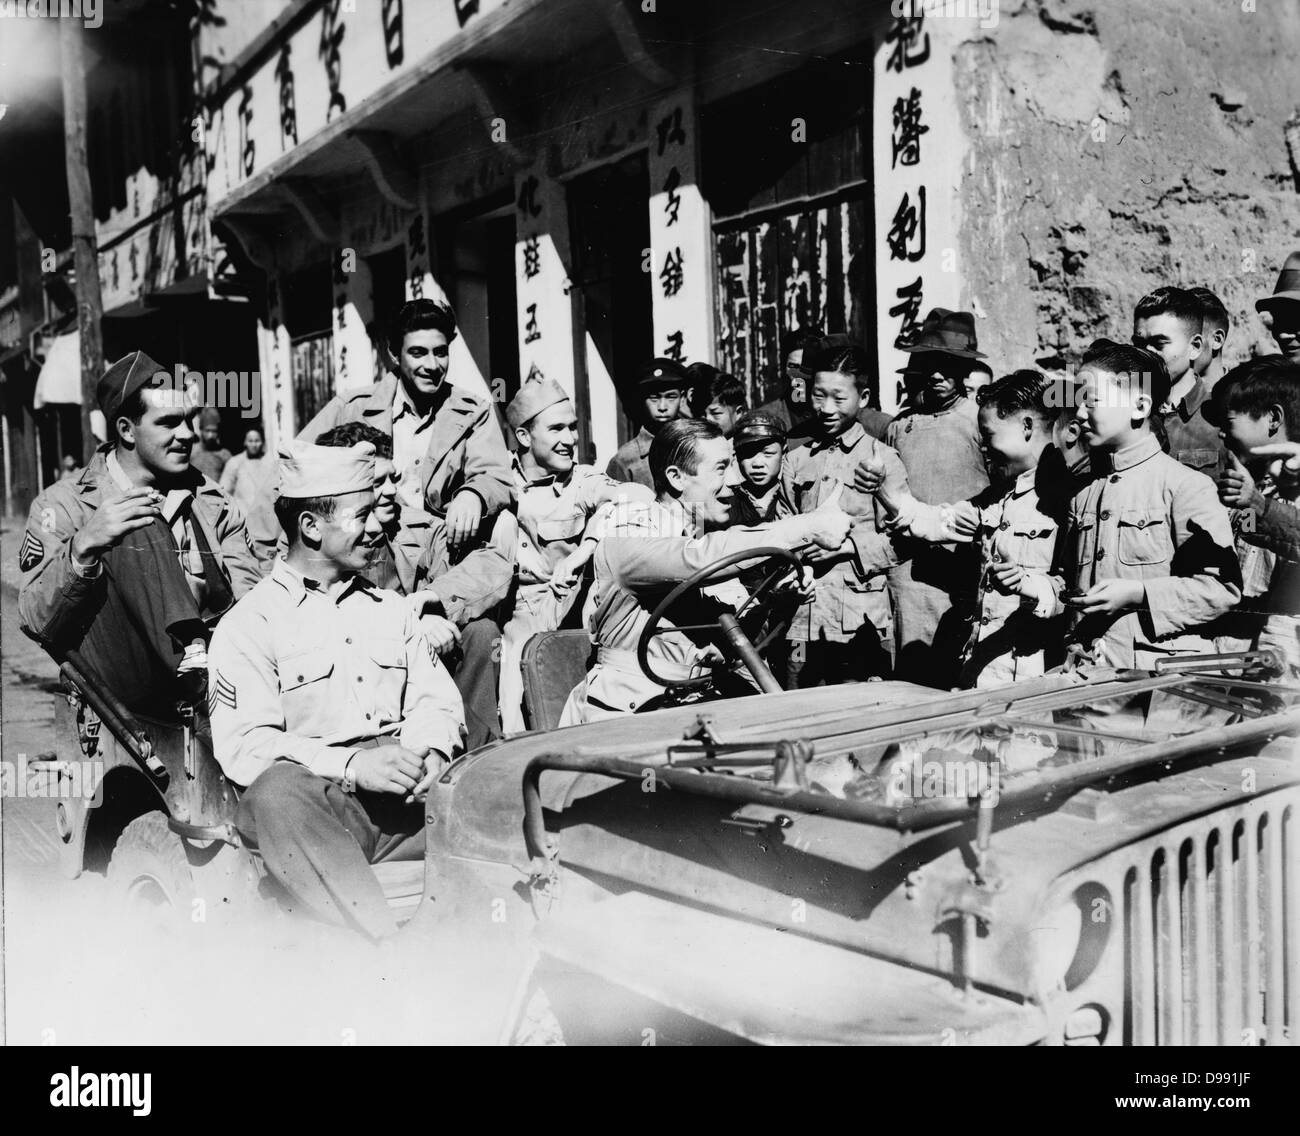 Joe e Brown (1892-1973) attore americano e il comico jeep guida caricato con American GIs vedendo i monumenti in Cina. Brown dando pollice in alto segno per i bambini cinesi, 1942 o 1943. Foto Stock